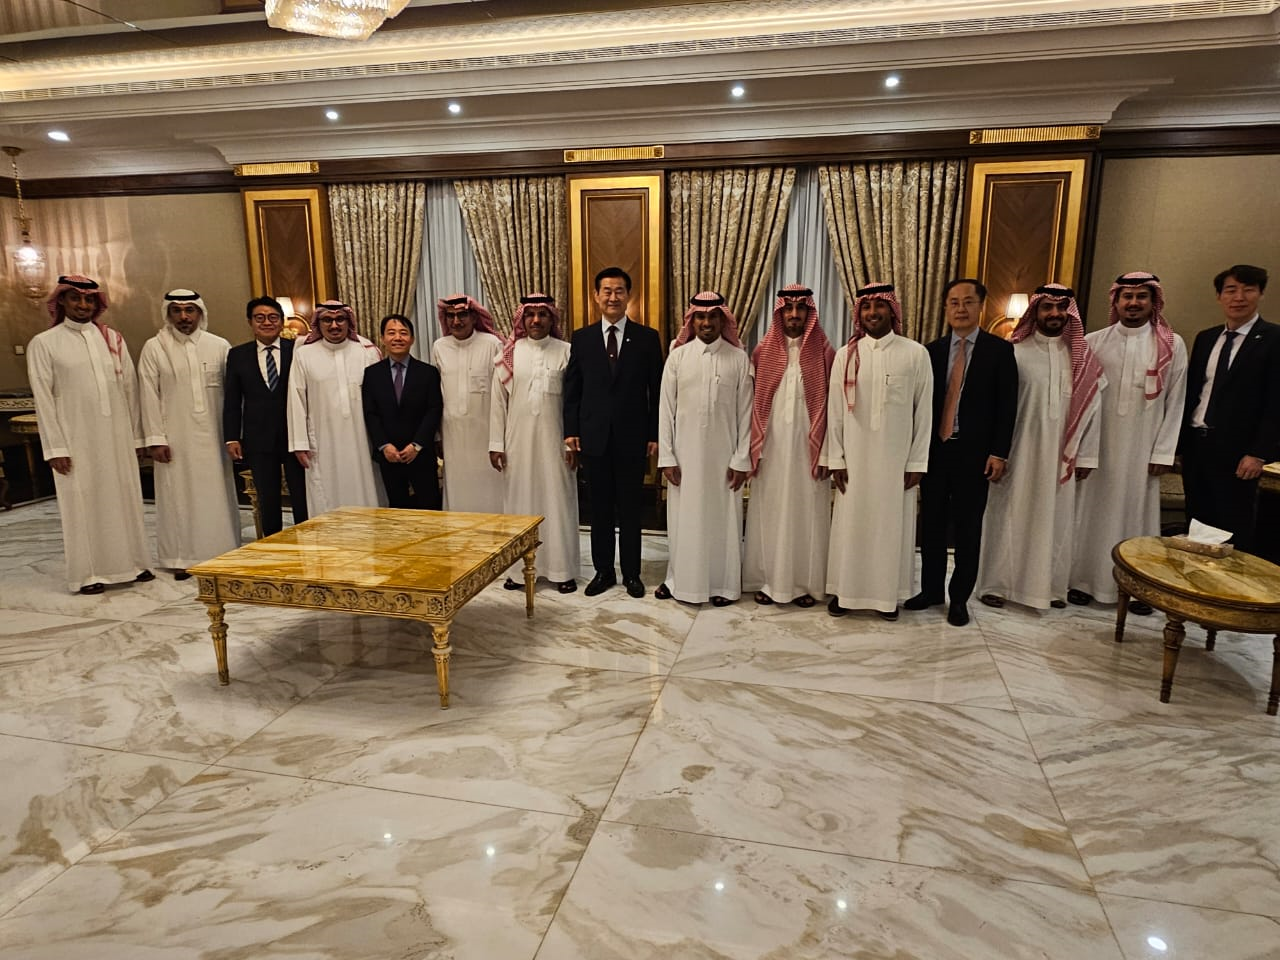 سعادة السفير يحضر مأدبة عشاء بدعوة من الجانب السعودي لمجلس الأعمال الكوري الجنوبي السعودي